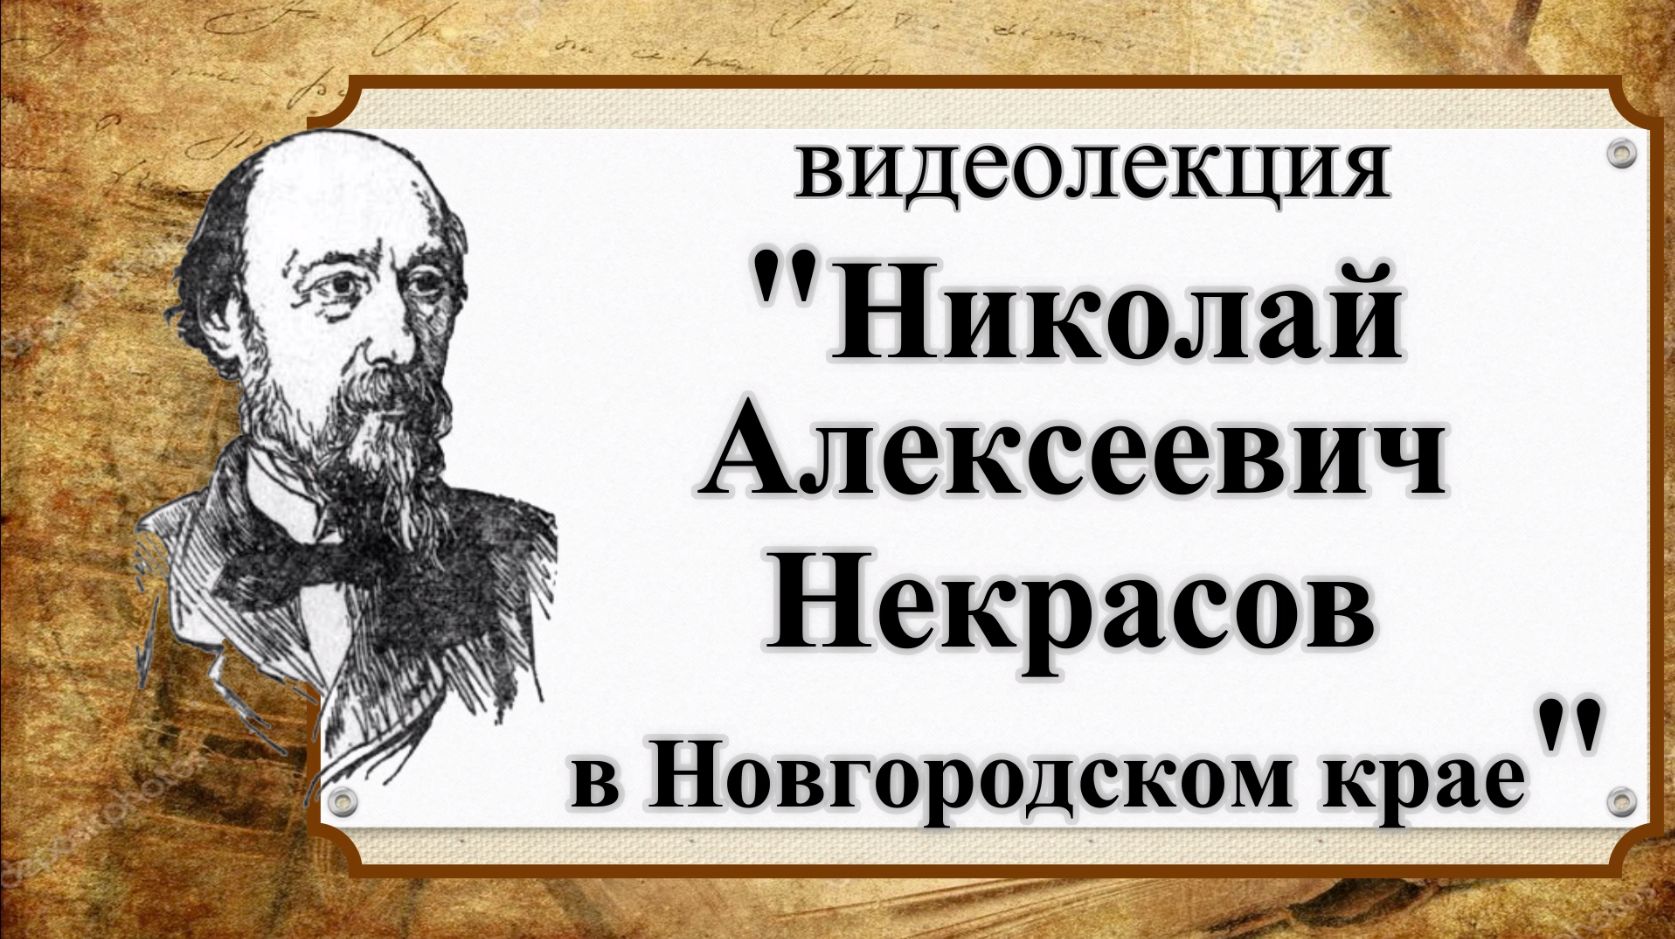 «Николай Алексеевич Некрасов в Новгородском крае»»